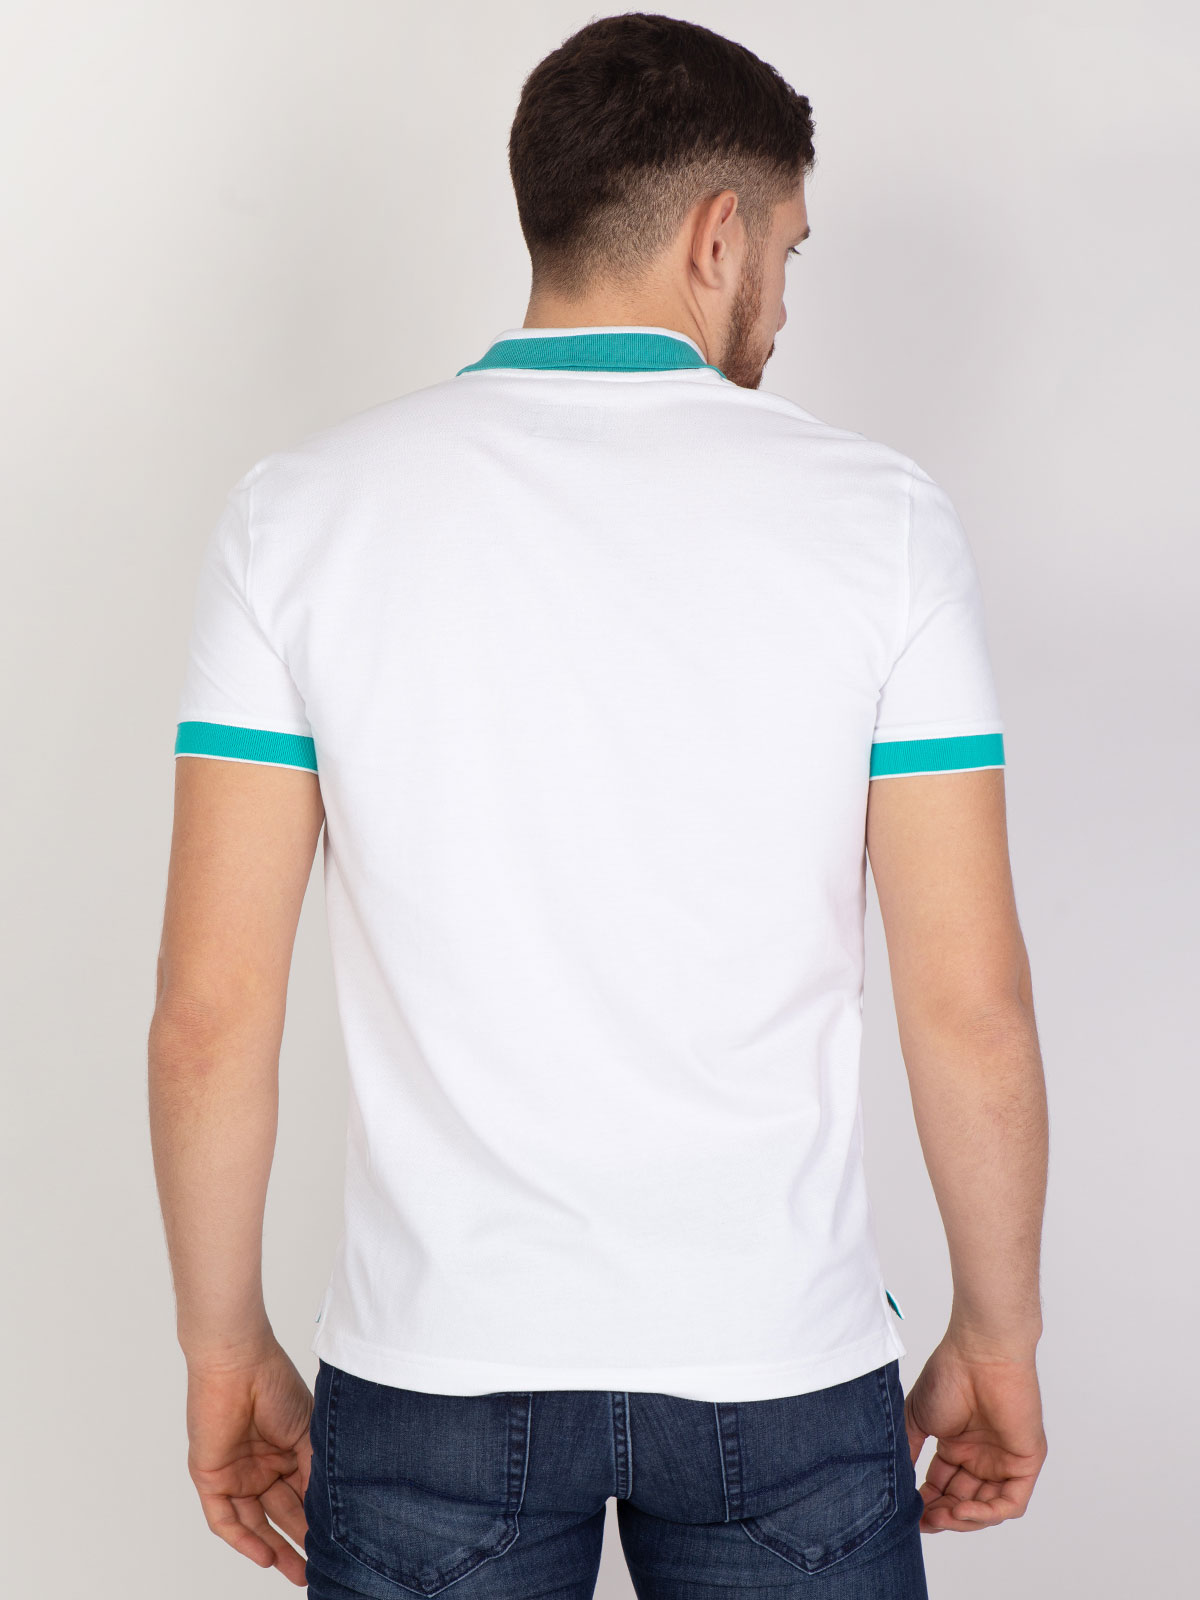 Κοντομάνικη μπλούζα σε λευκό και τιρκουά - 93395 € 24.75 img3